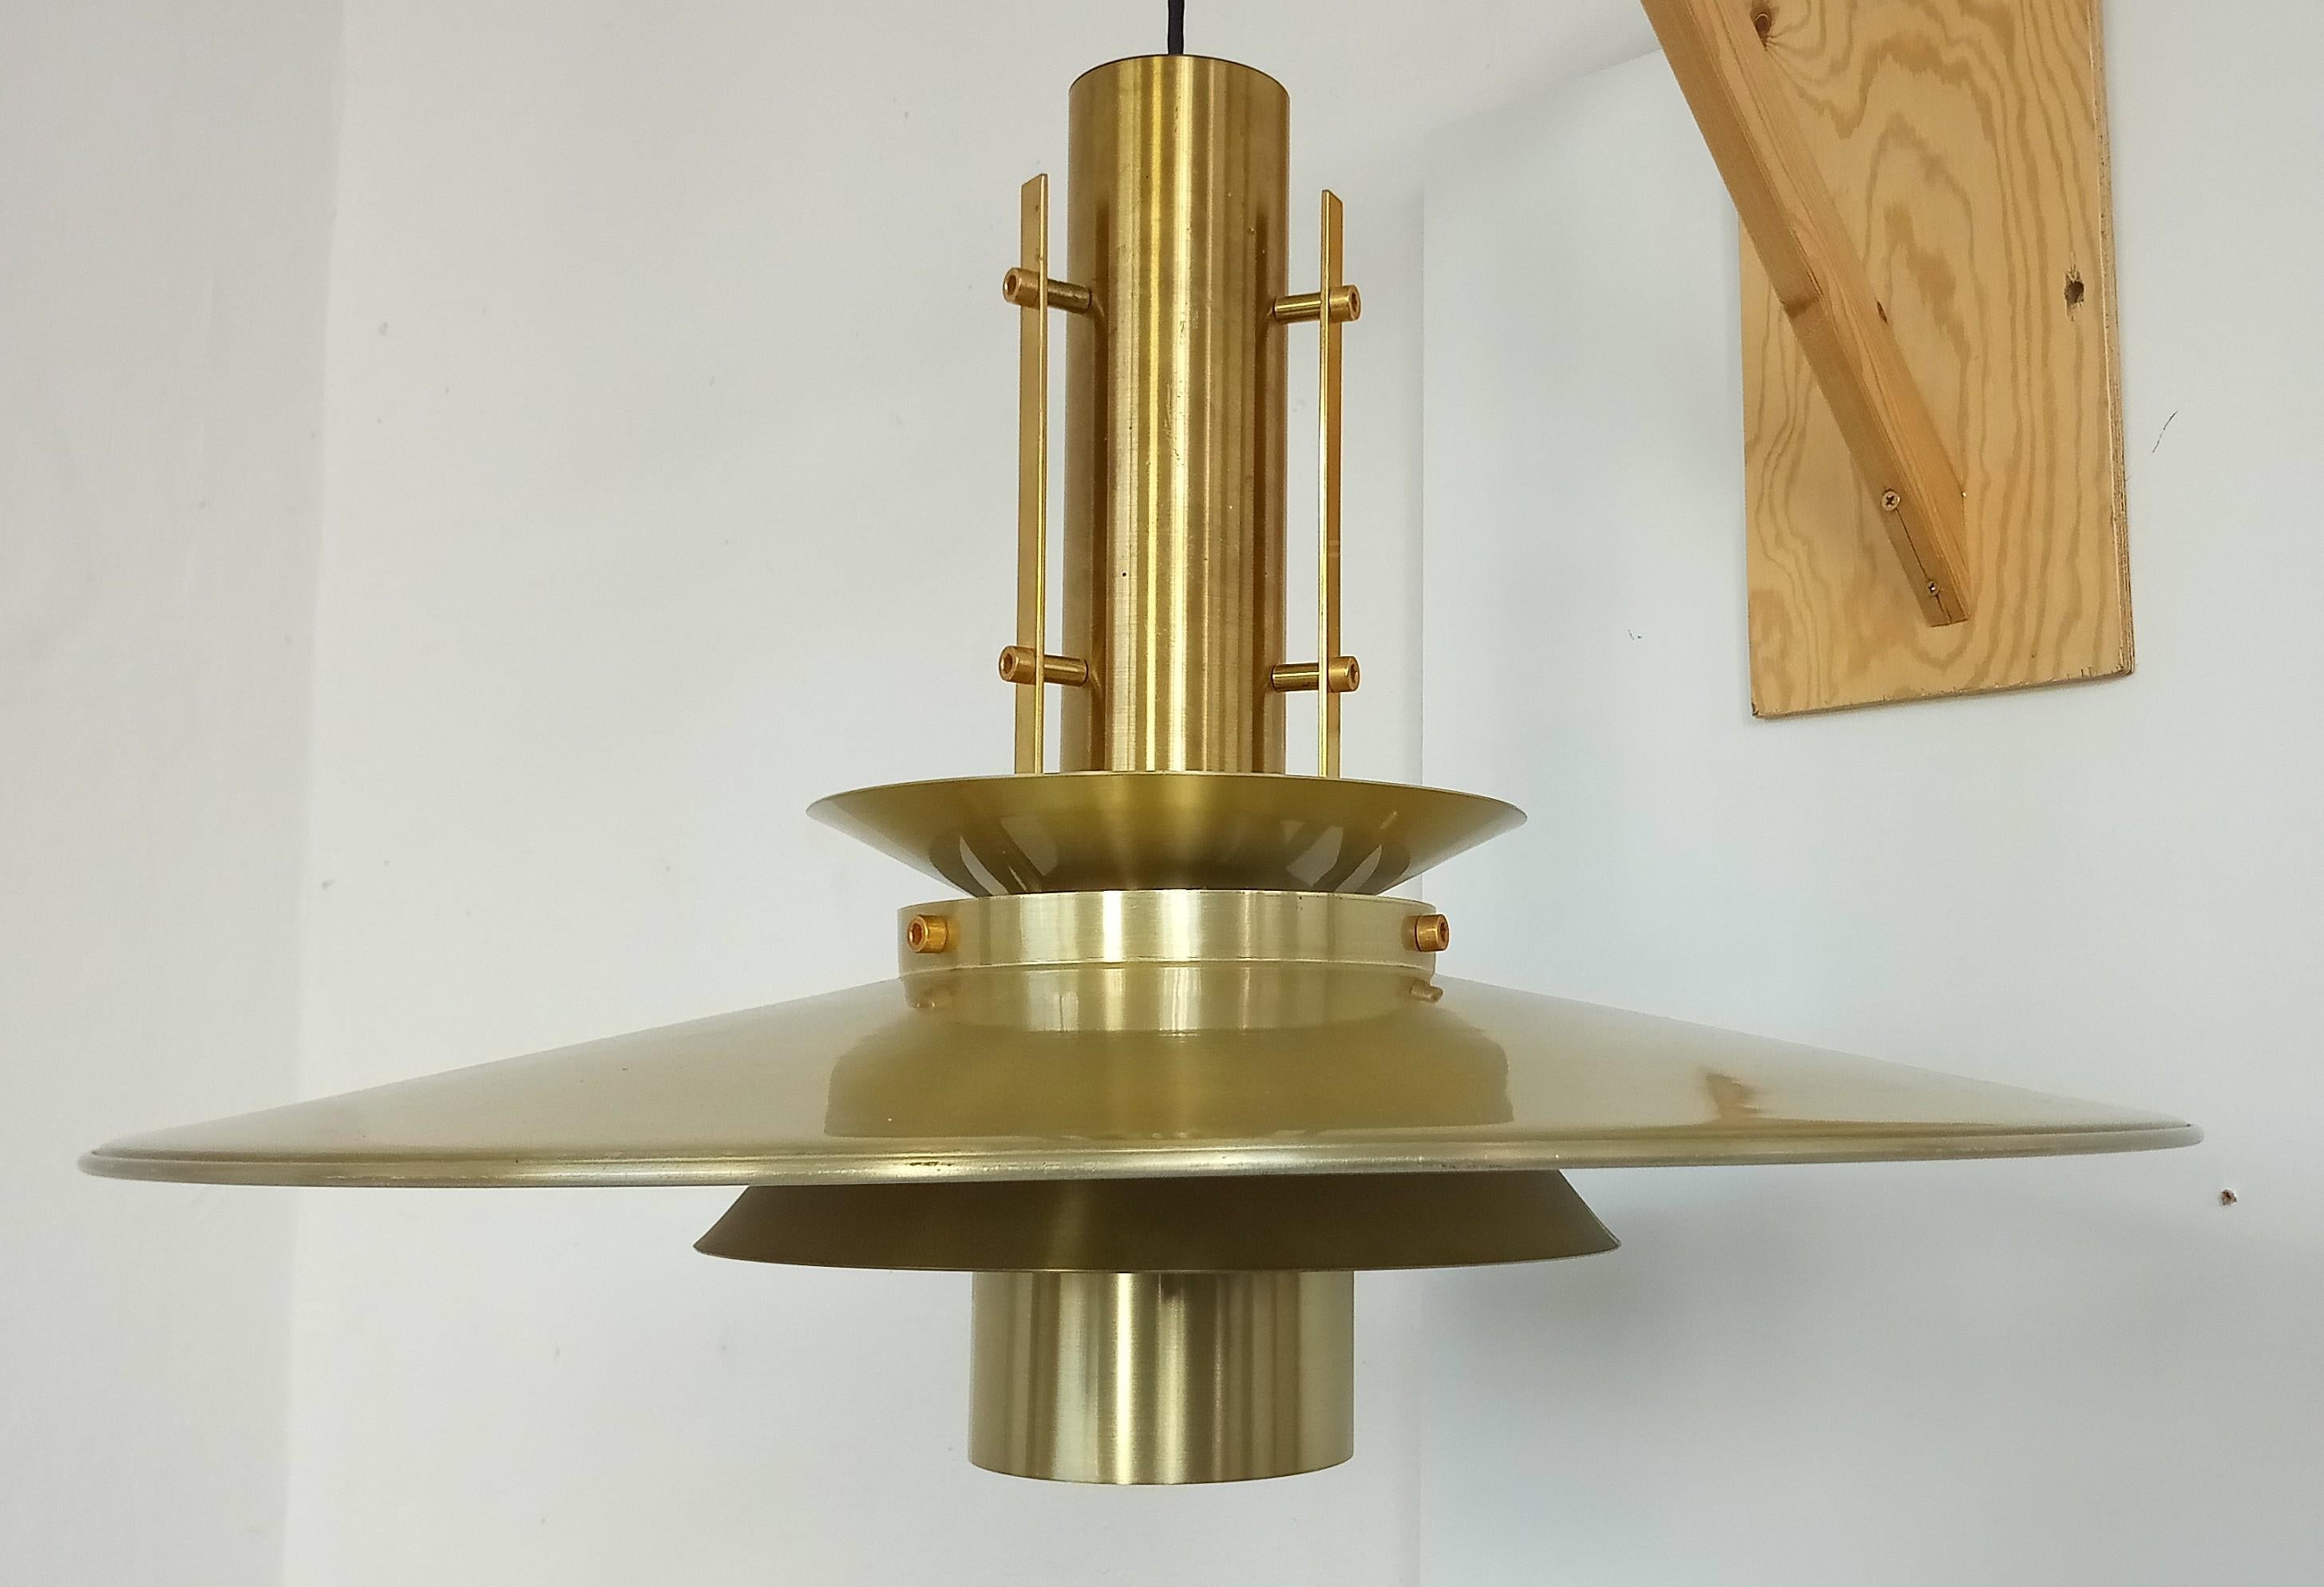 Rare brass ceiling lamp by Ph. Valentiner, denmark 60s 
diameter: 70 cm high: 45 cm